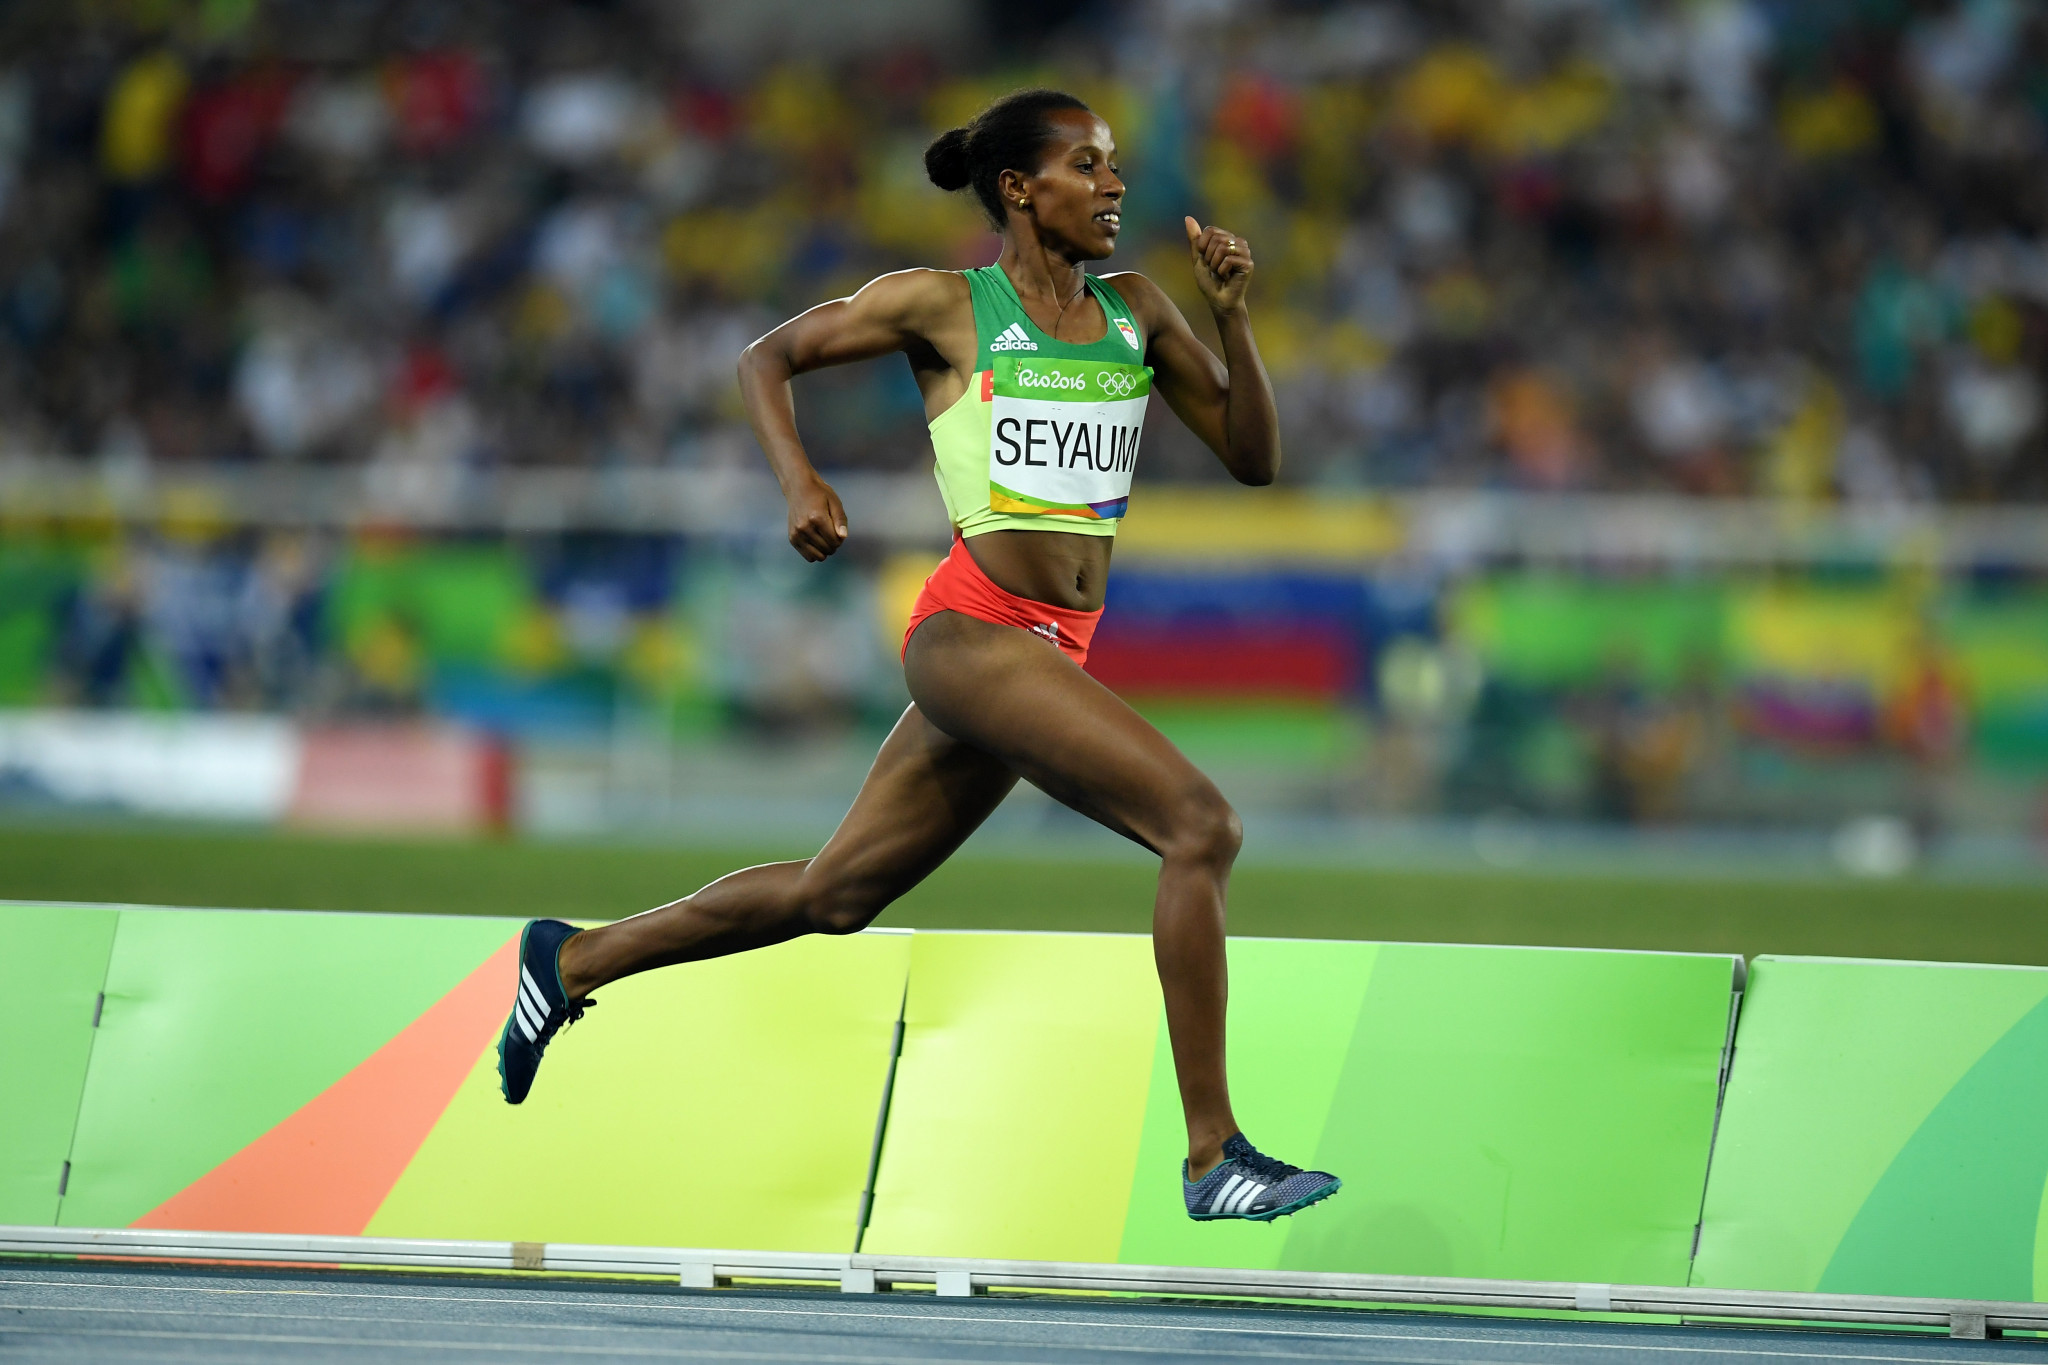 Ethiopia dominates at Campaccio leg of World Athletics Cross Country Tour 